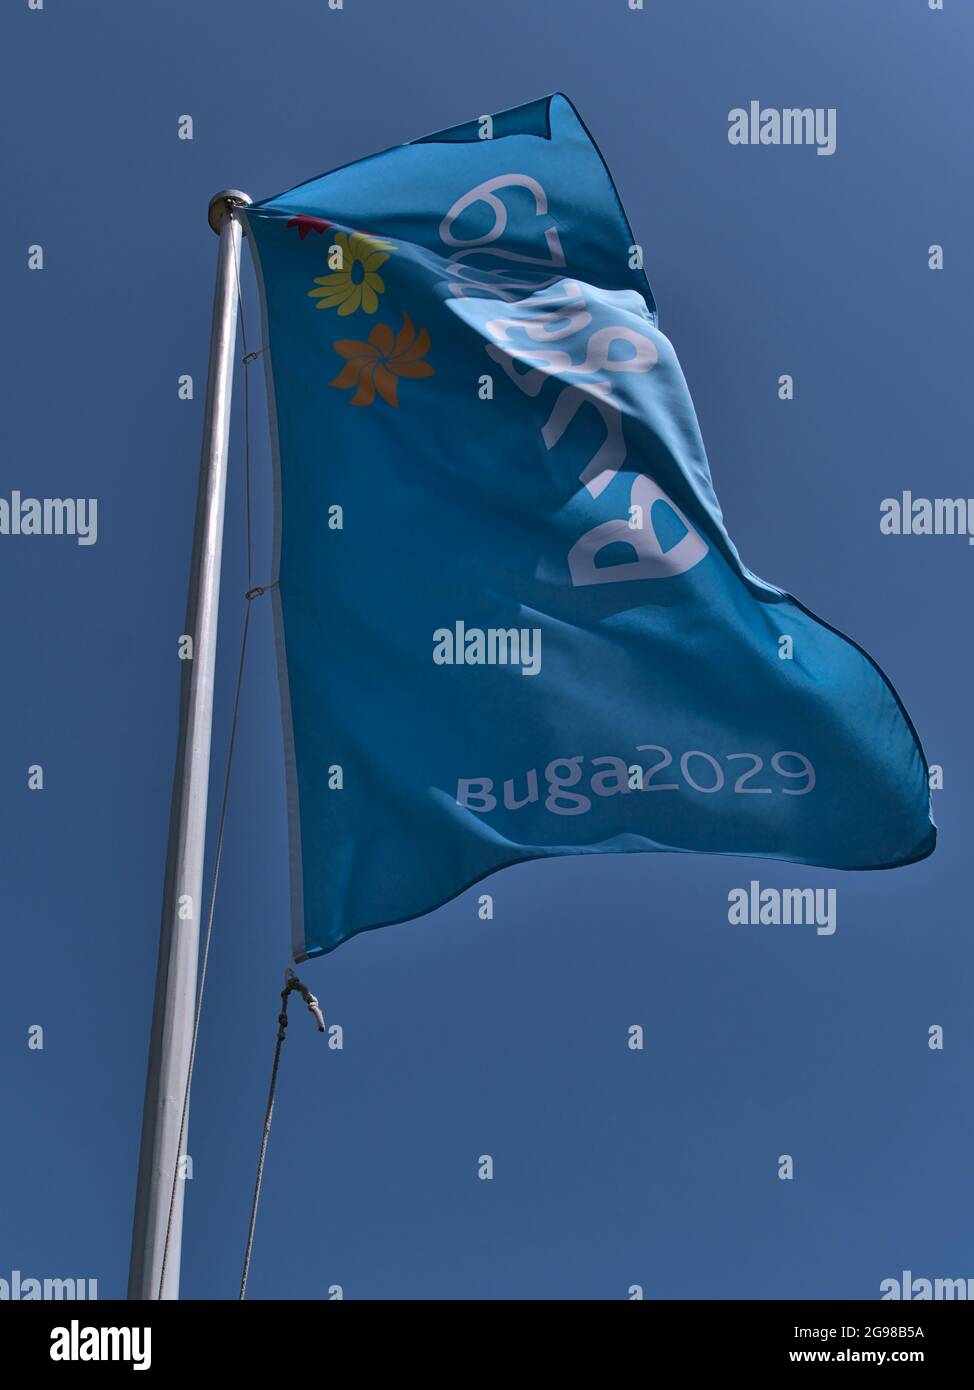 Vista ad angolo basso del flagpole con bandiera blu chiaro per Bundesgartenschau (Buga) 2029, una mostra biennale di orticoltura. Foto Stock